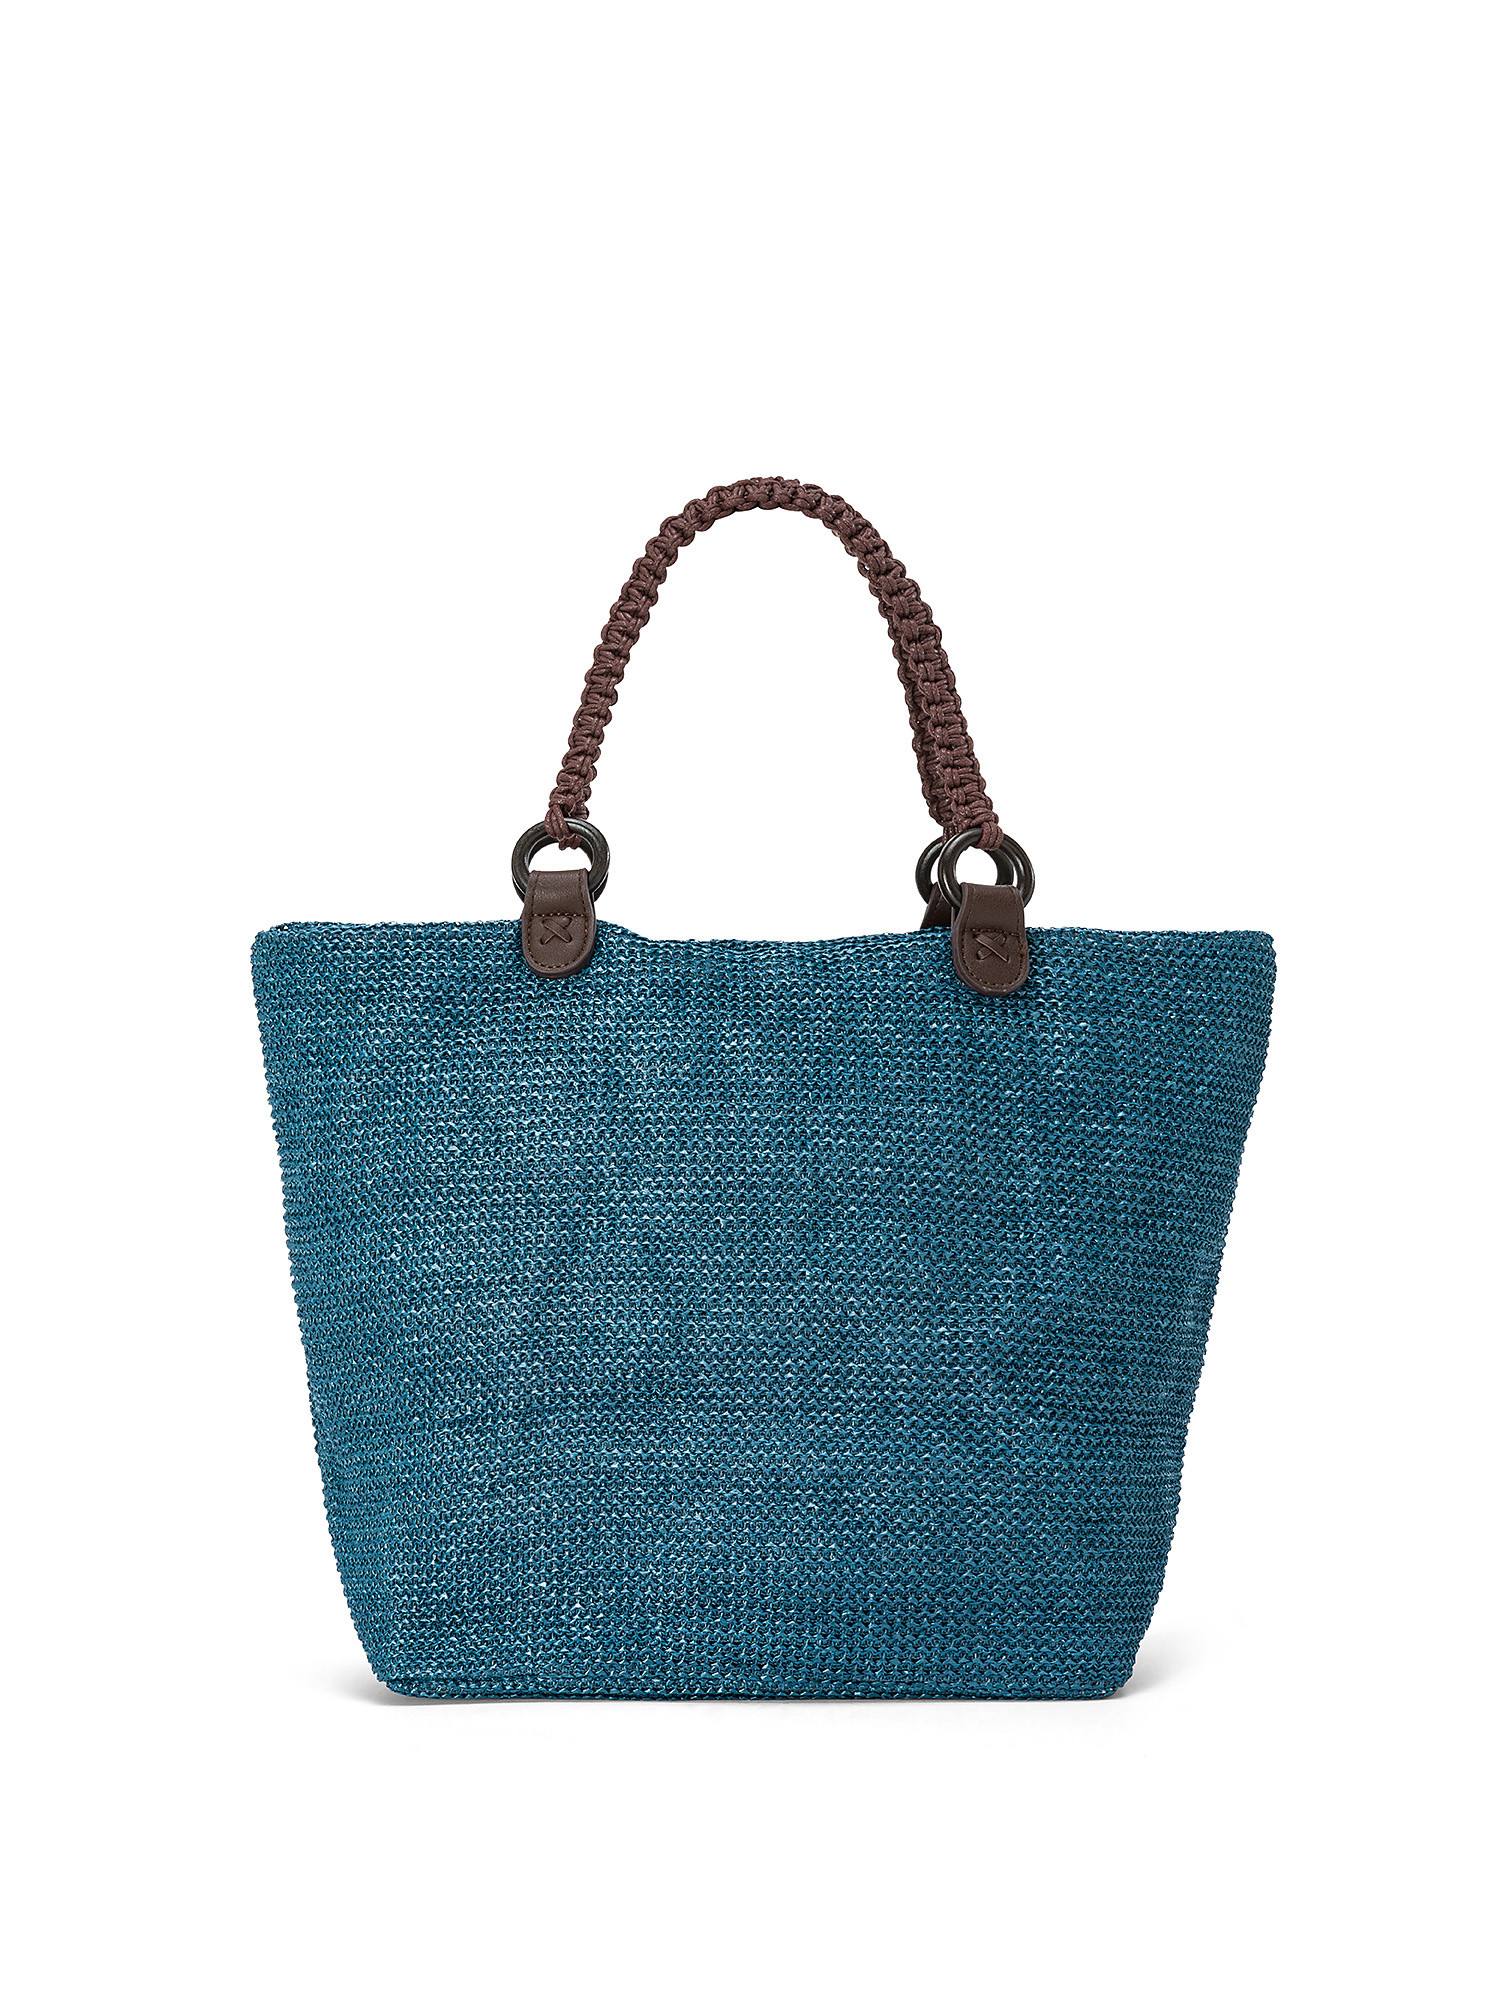 Koan - Shopping bag, Blu, large image number 0